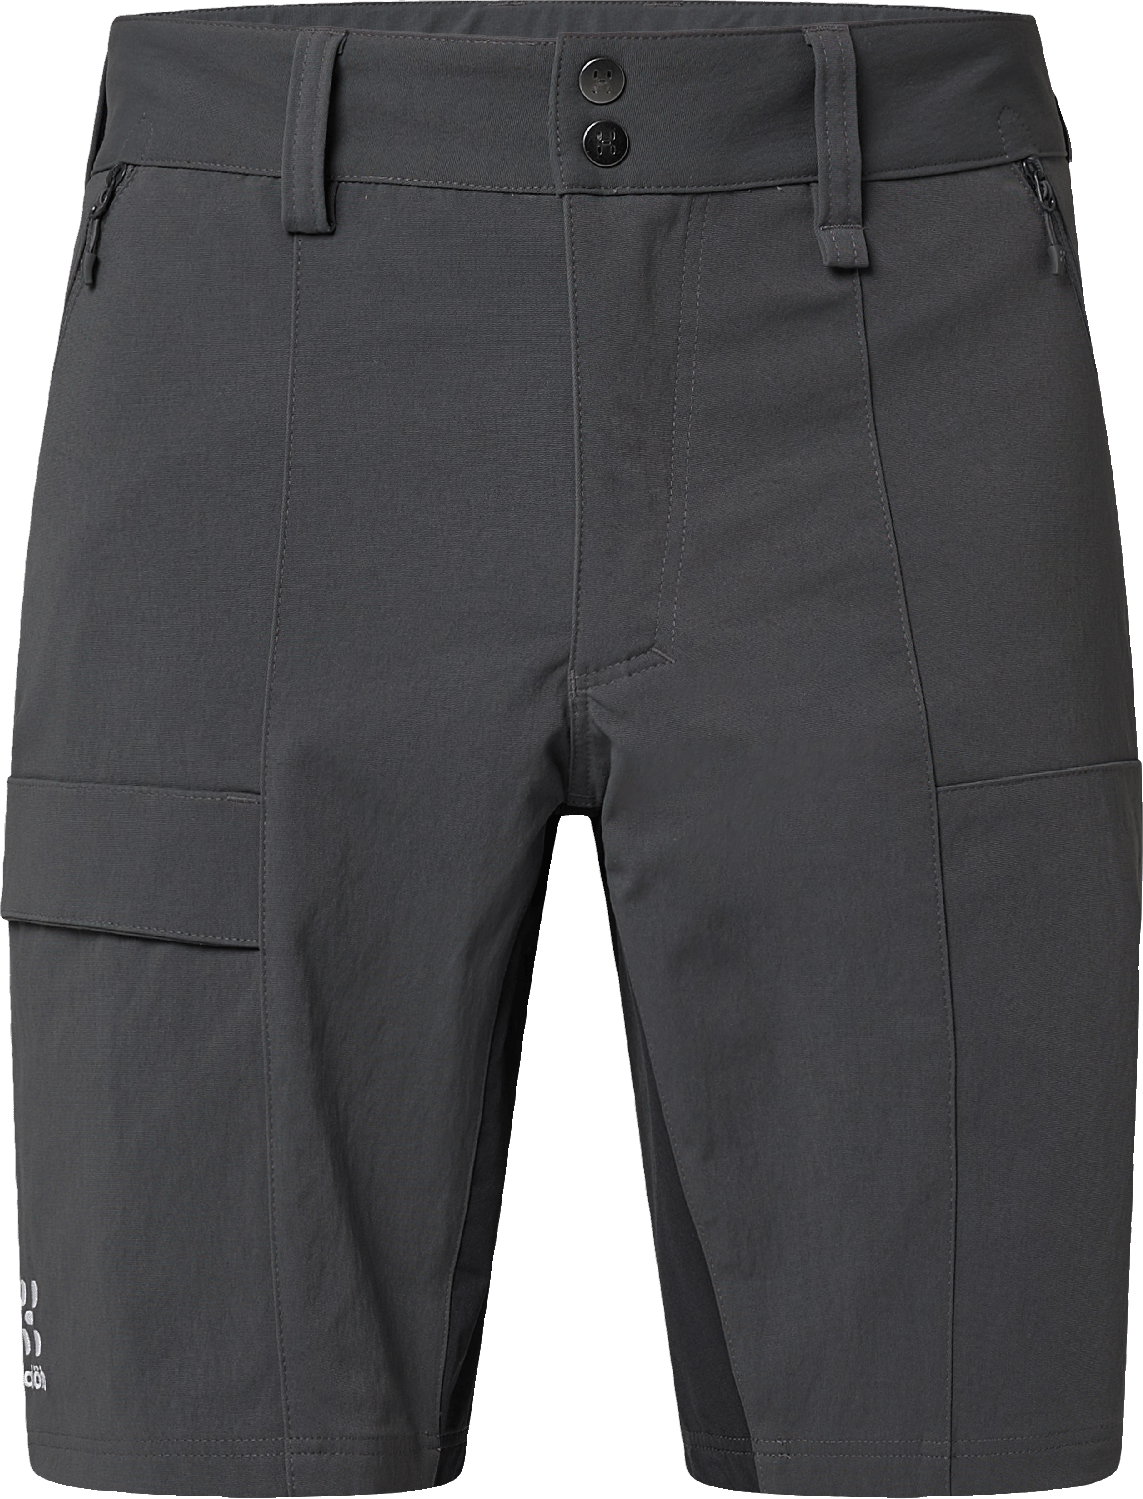 Haglöfs Men's Mid Standard Shorts Magnetite/True Black